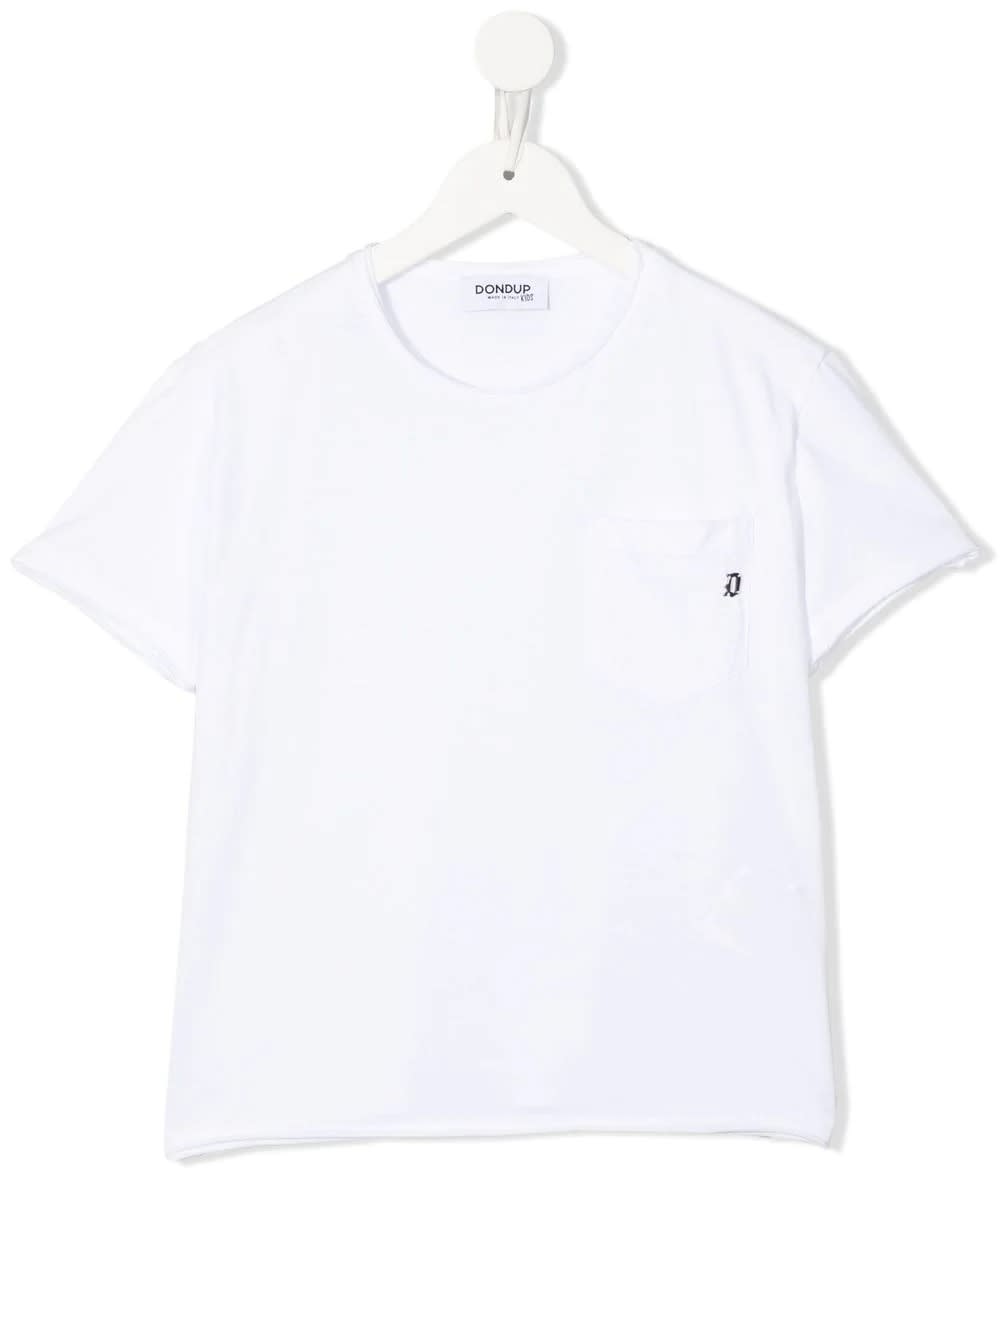 Dondup Kids White T-shirt With Logo